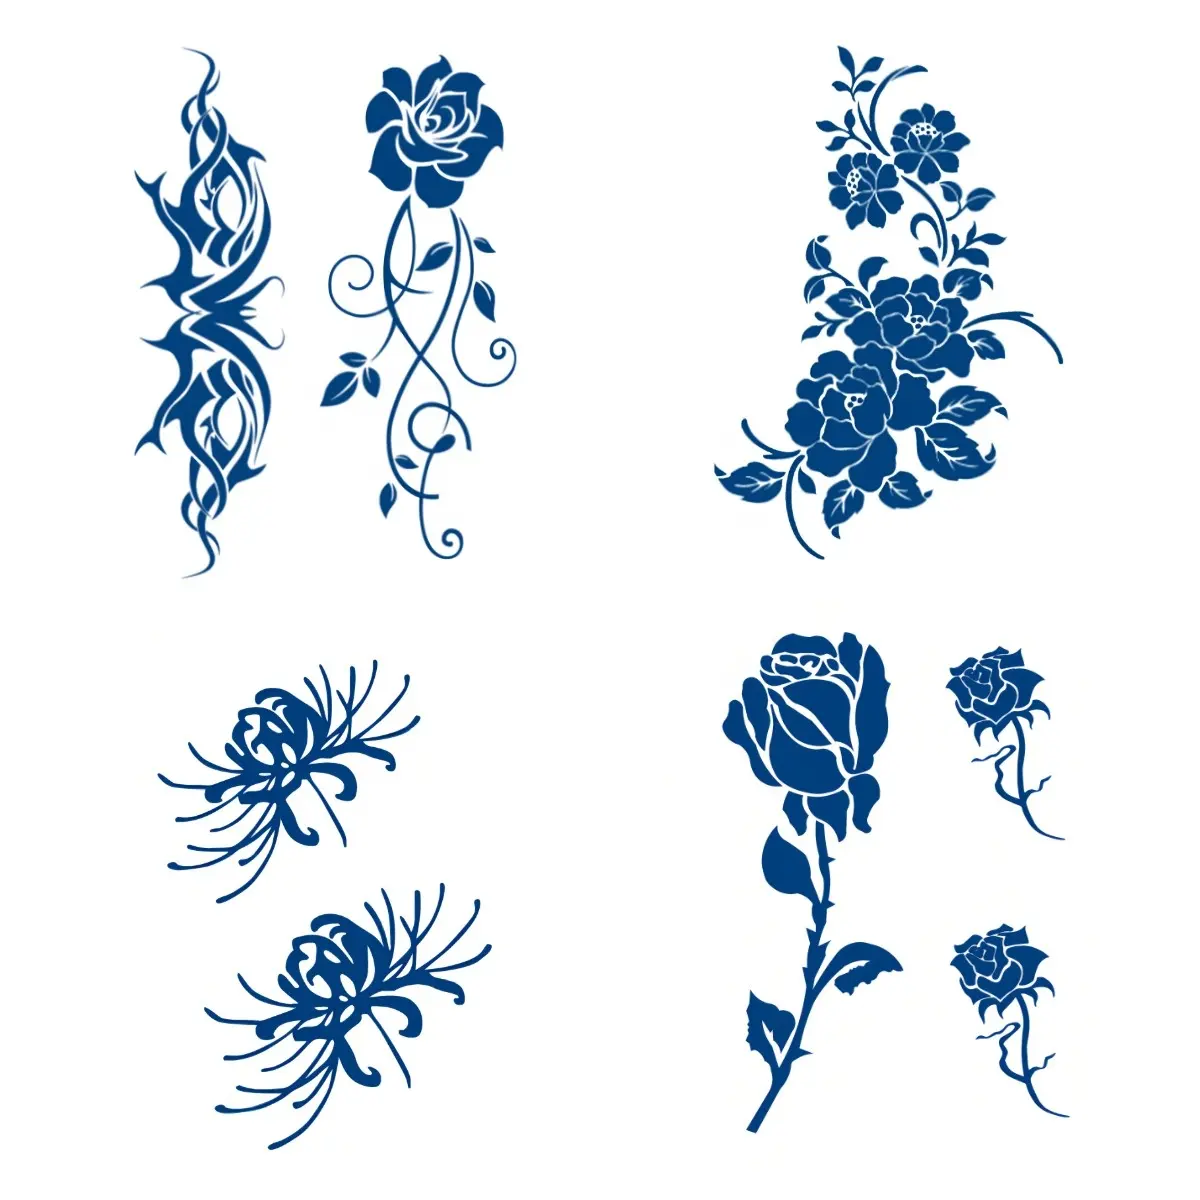 Pegatinas de tatuaje semipermanente, tatuajes temporales con diseños de flores, muestras gratis